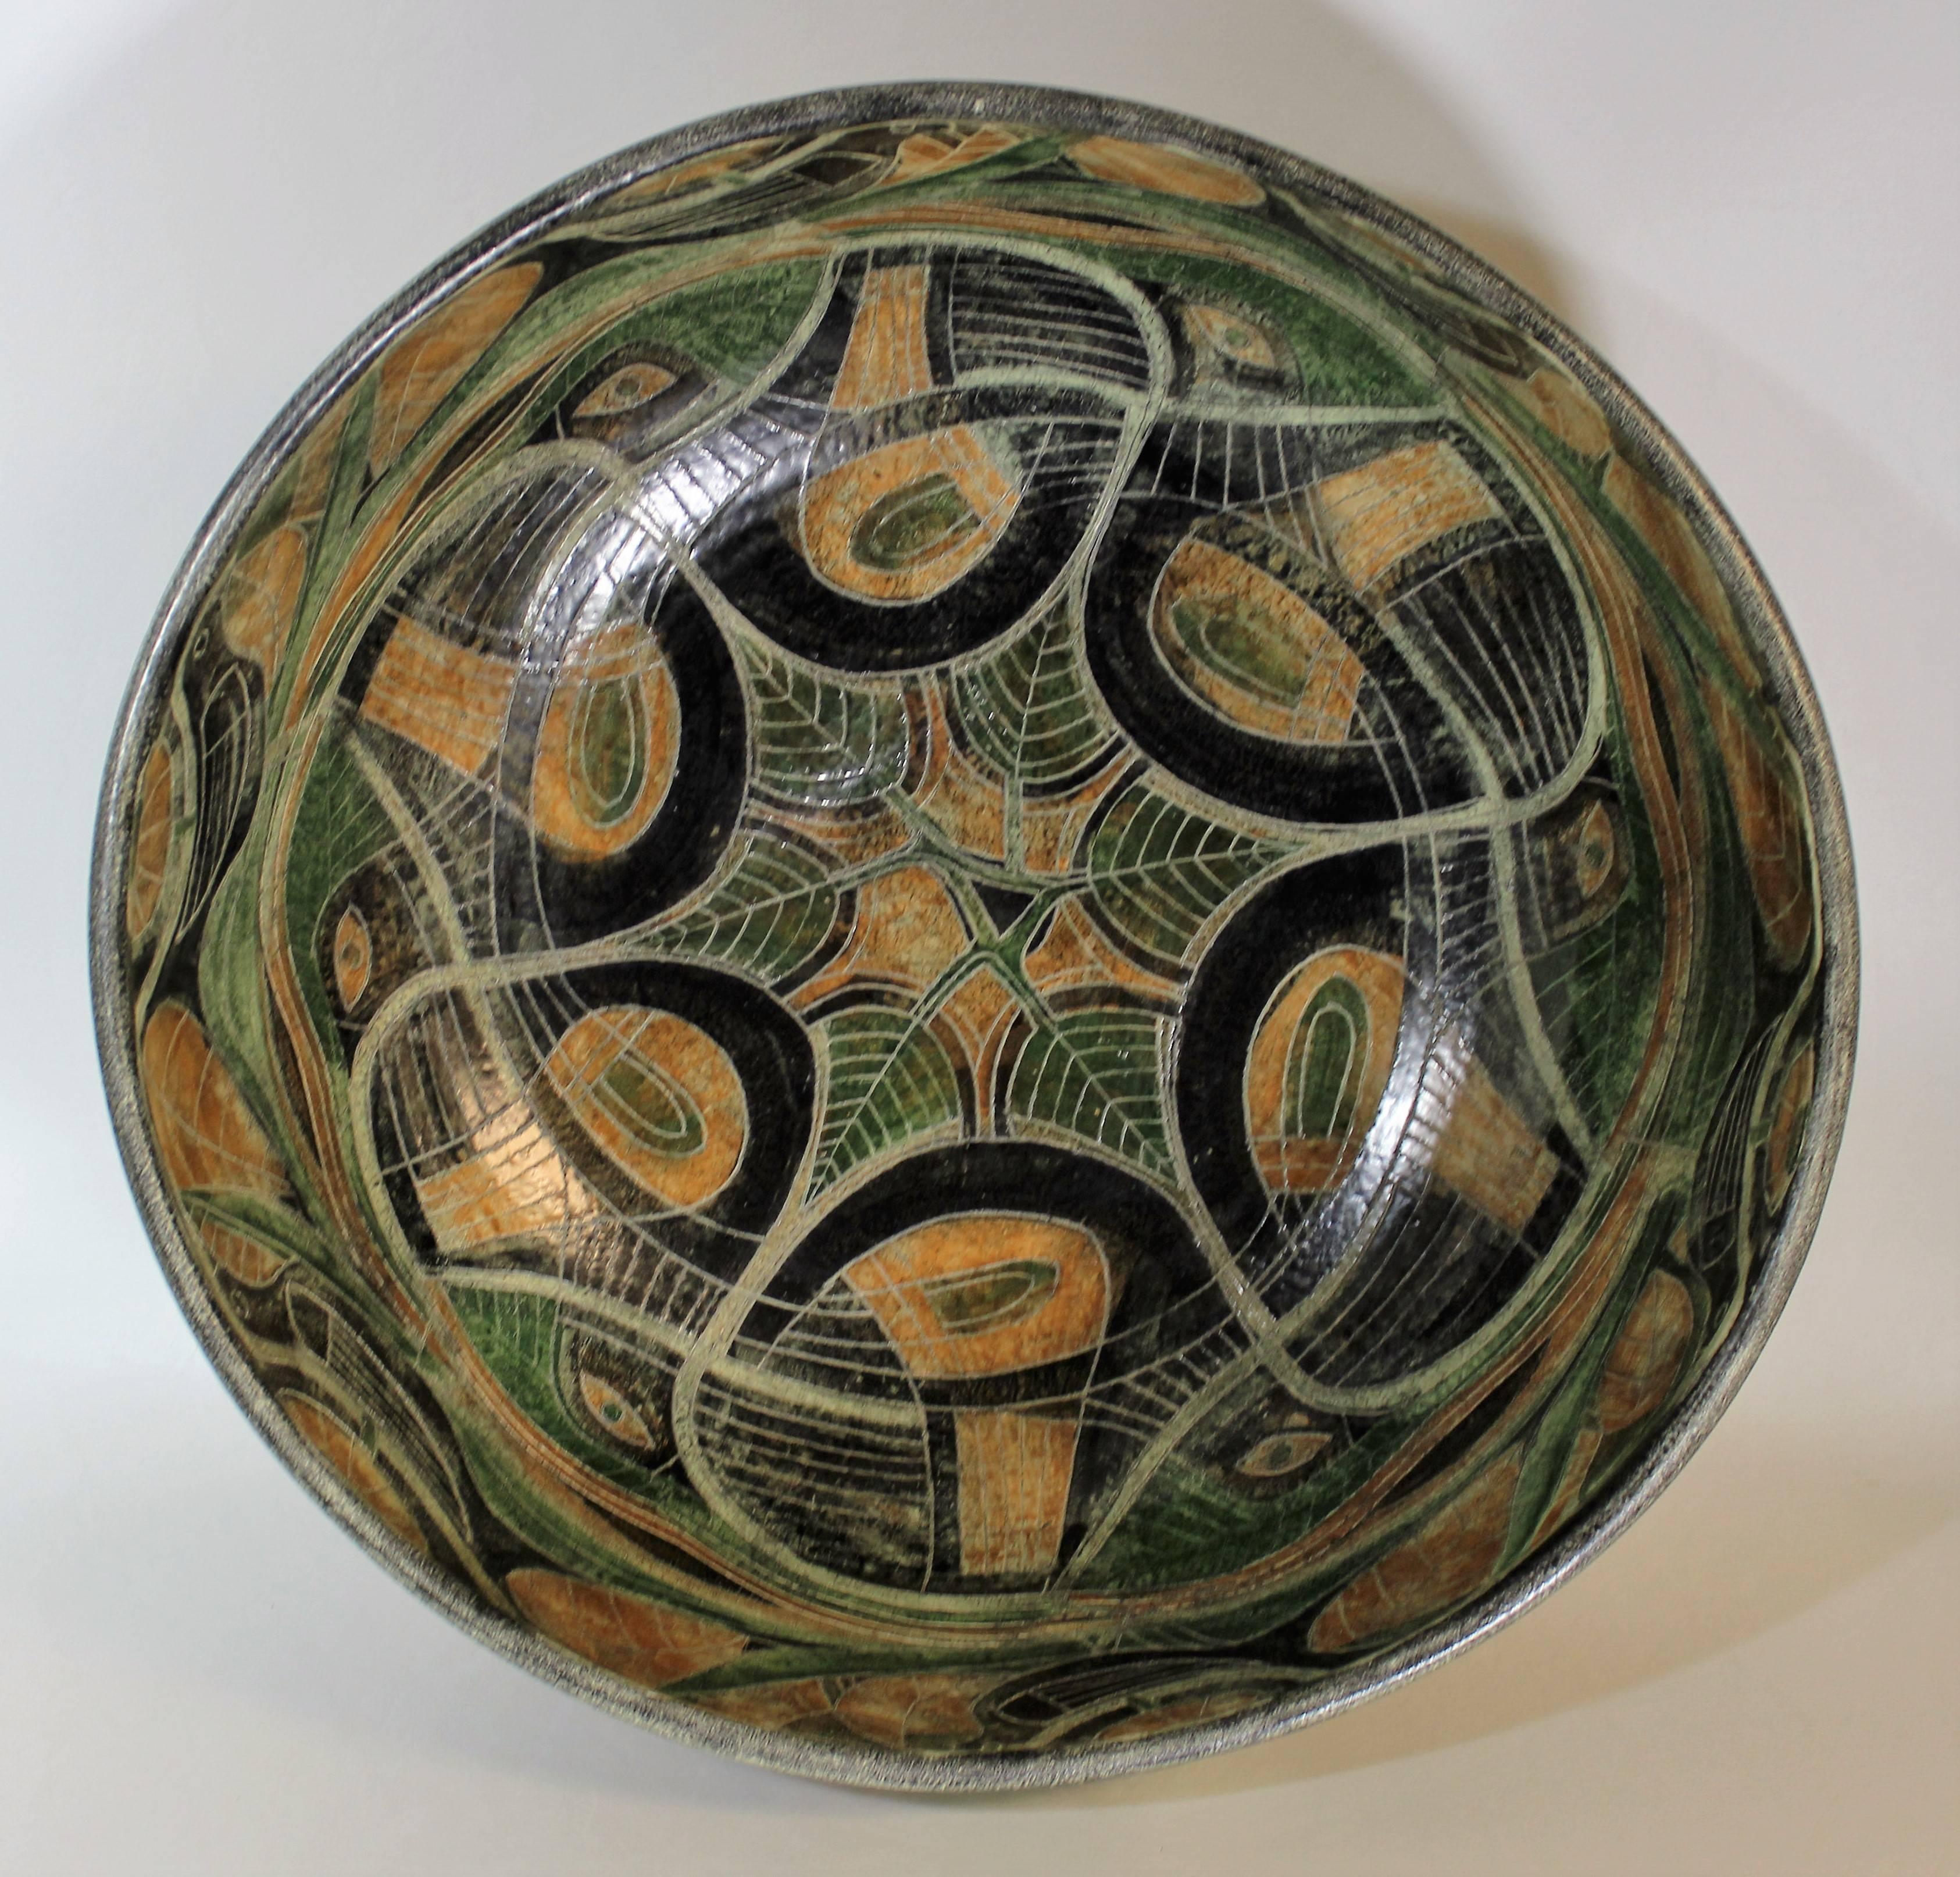 Schale aus Studio-Keramik der Jahrhundertmitte von Theo und Susan Harlander von Brooklin Pottery, Brooklin, Ontario. Diese Schale wurde in einem skurrilen kubistischen Stil mit satten Farben und einer matten Glasur entworfen. Es besteht aus einer